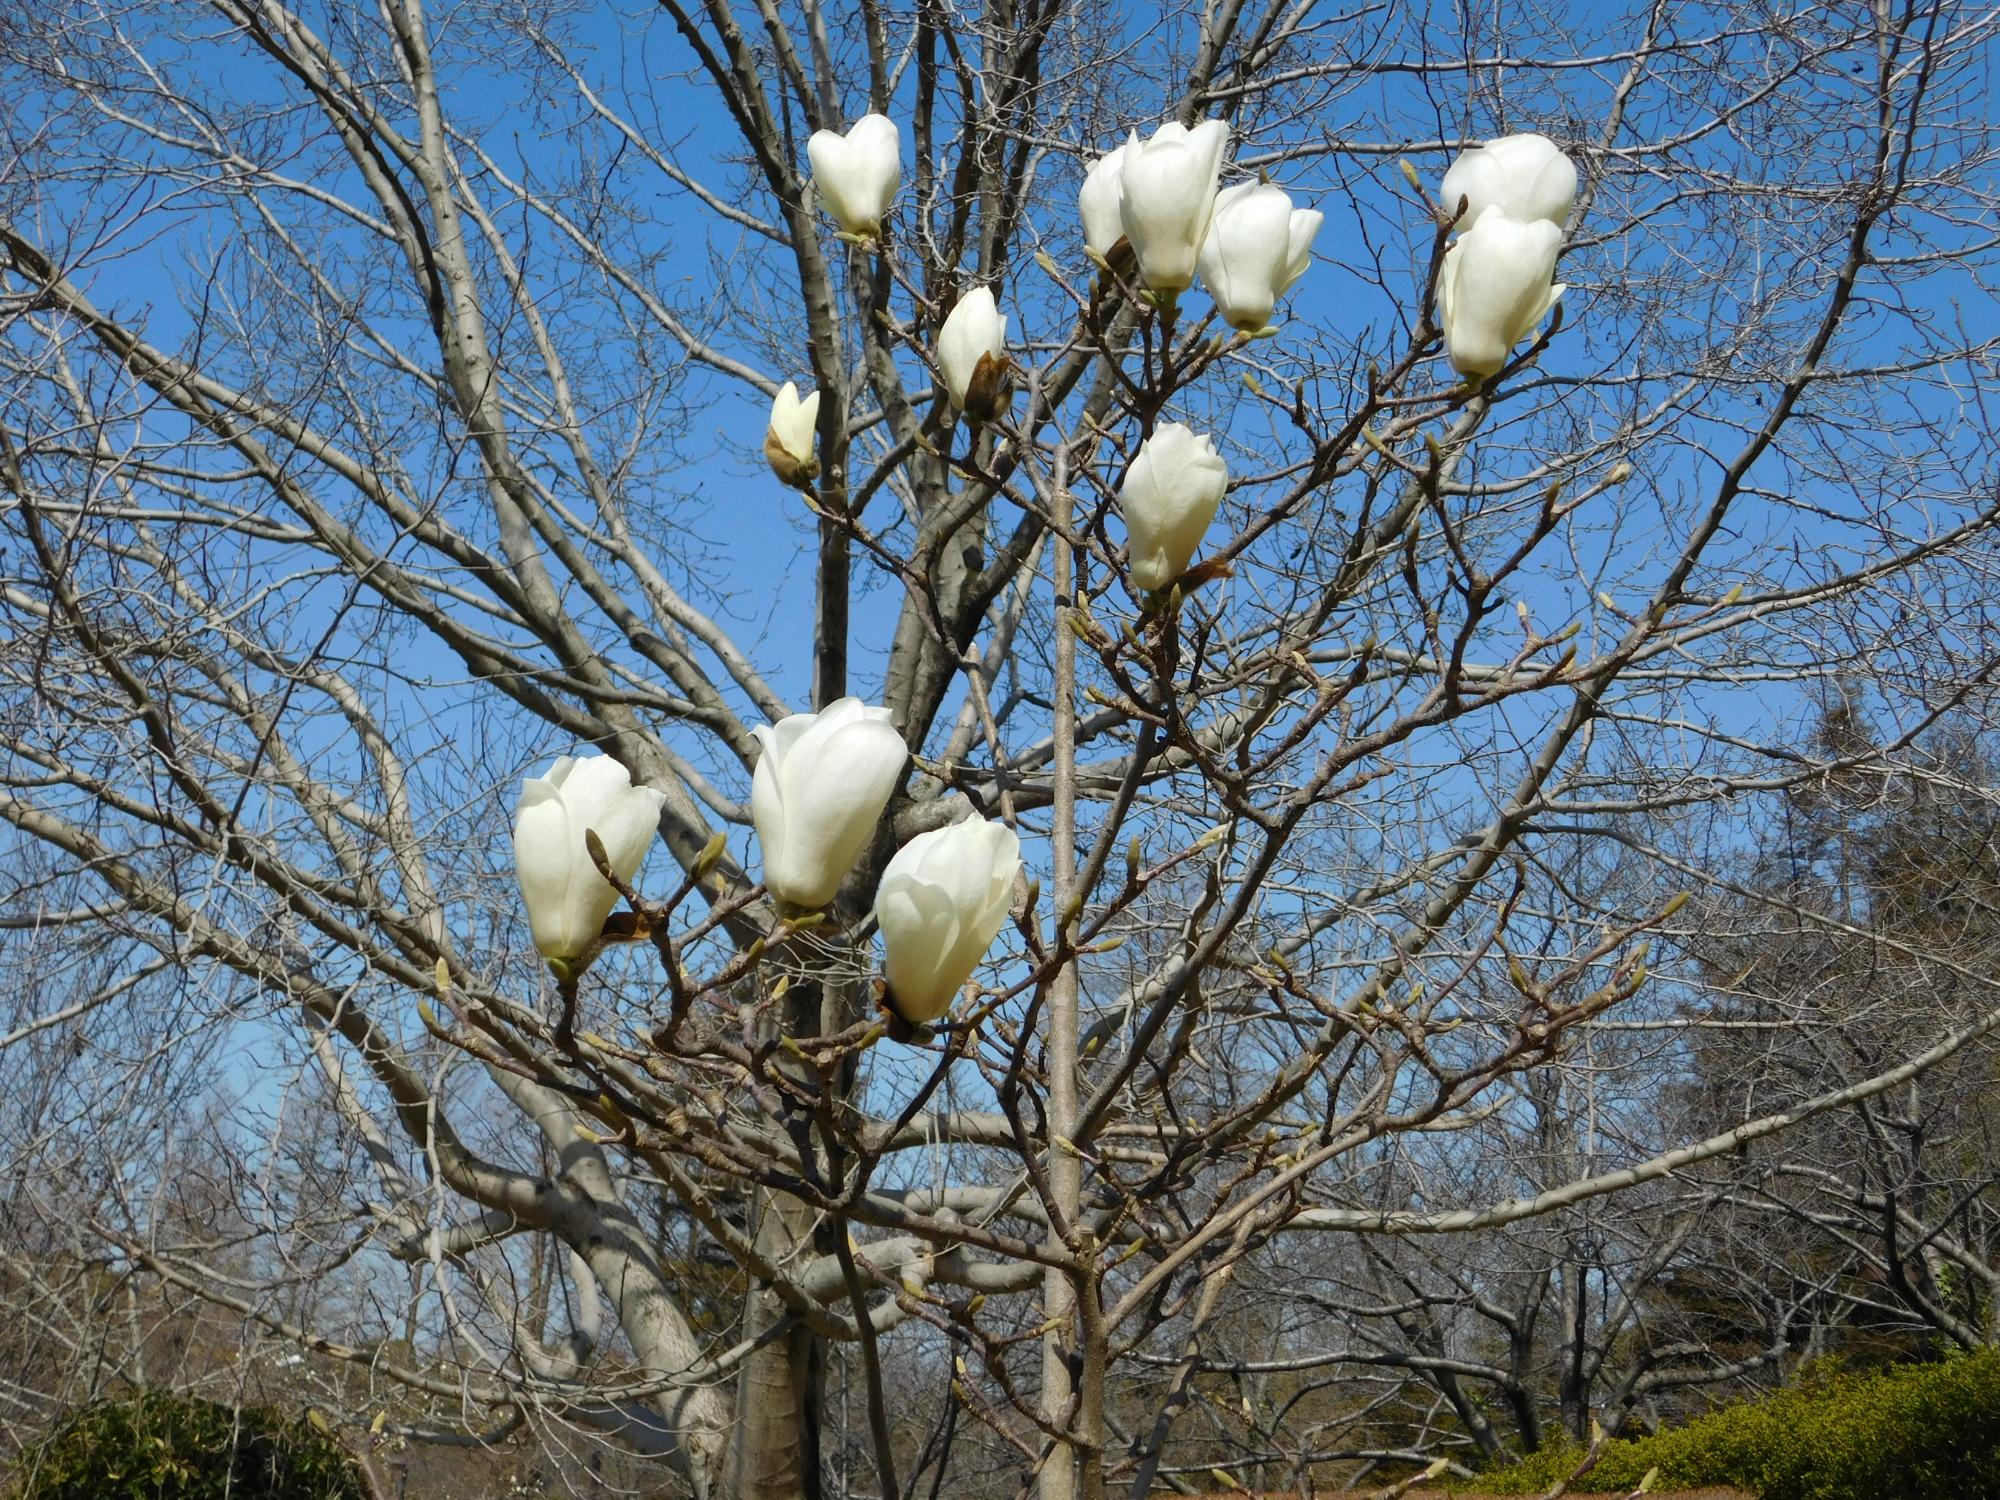 健康器具の少し南の沿道沿いにある白モクレンの花が咲きました。公園の中のモクレンでは一番早い開花です。